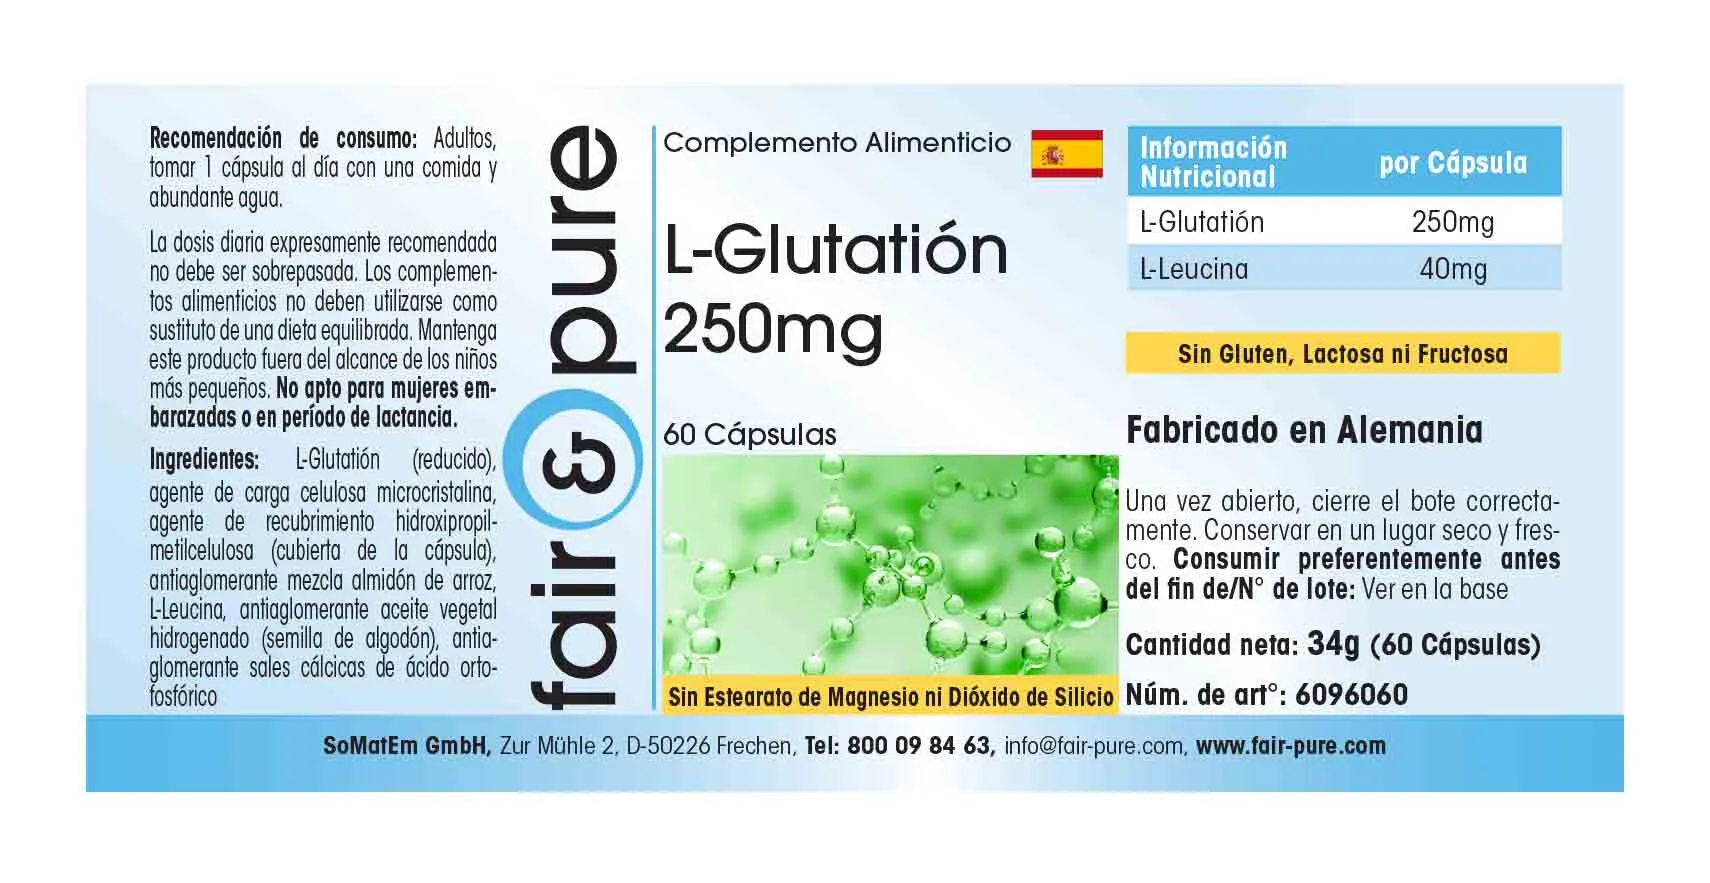 L-Glutathion 250mg